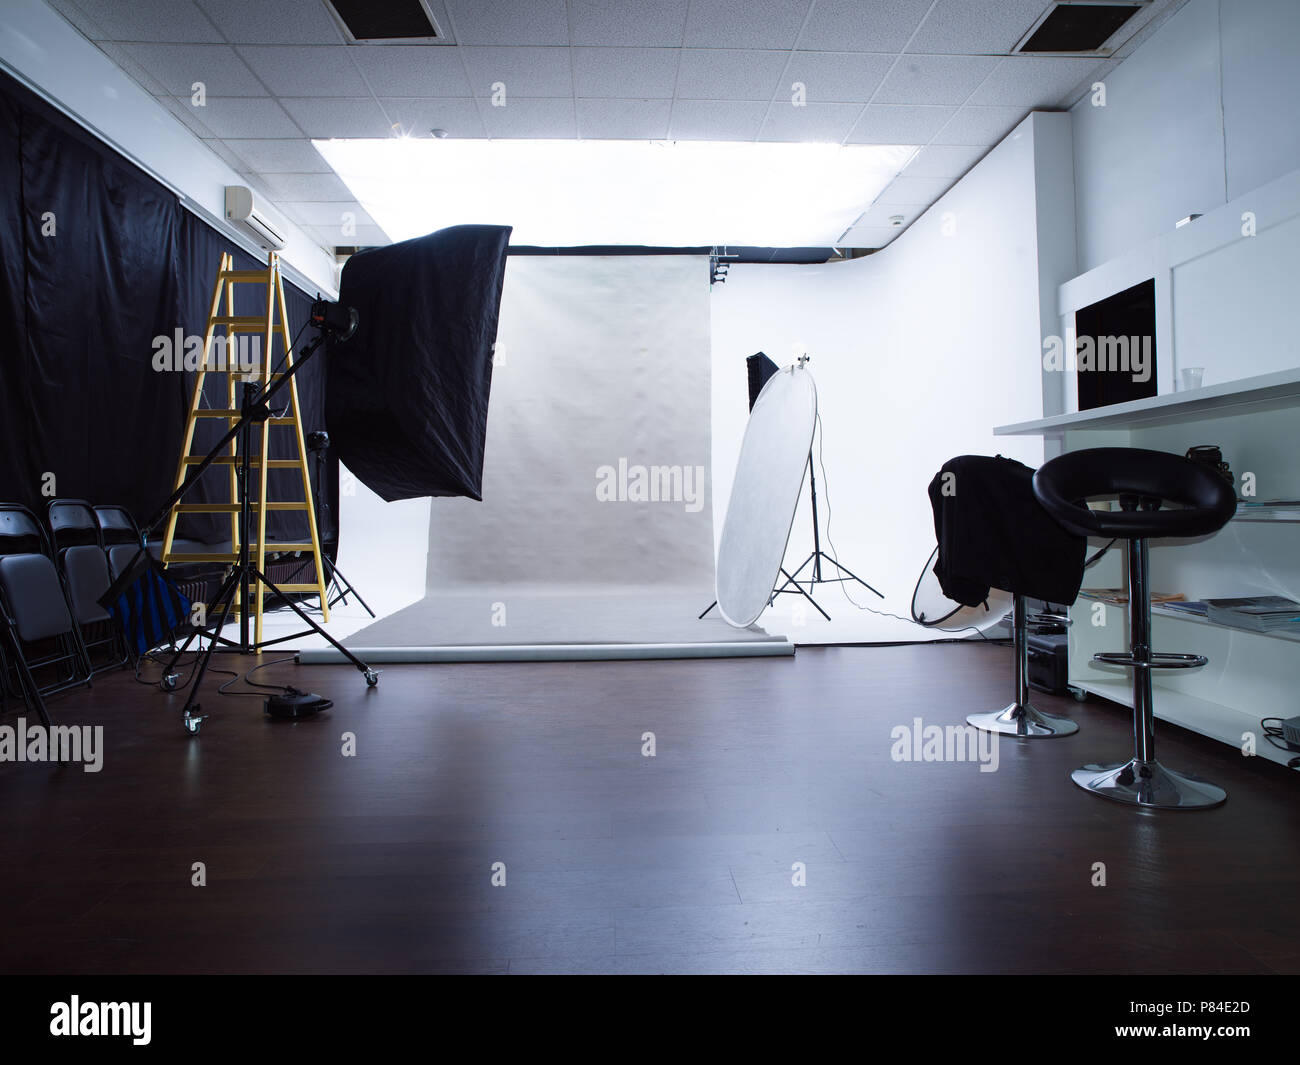 Estudio fotográfico moderno interior con equipos de iluminación profesional  Fotografía de stock - Alamy